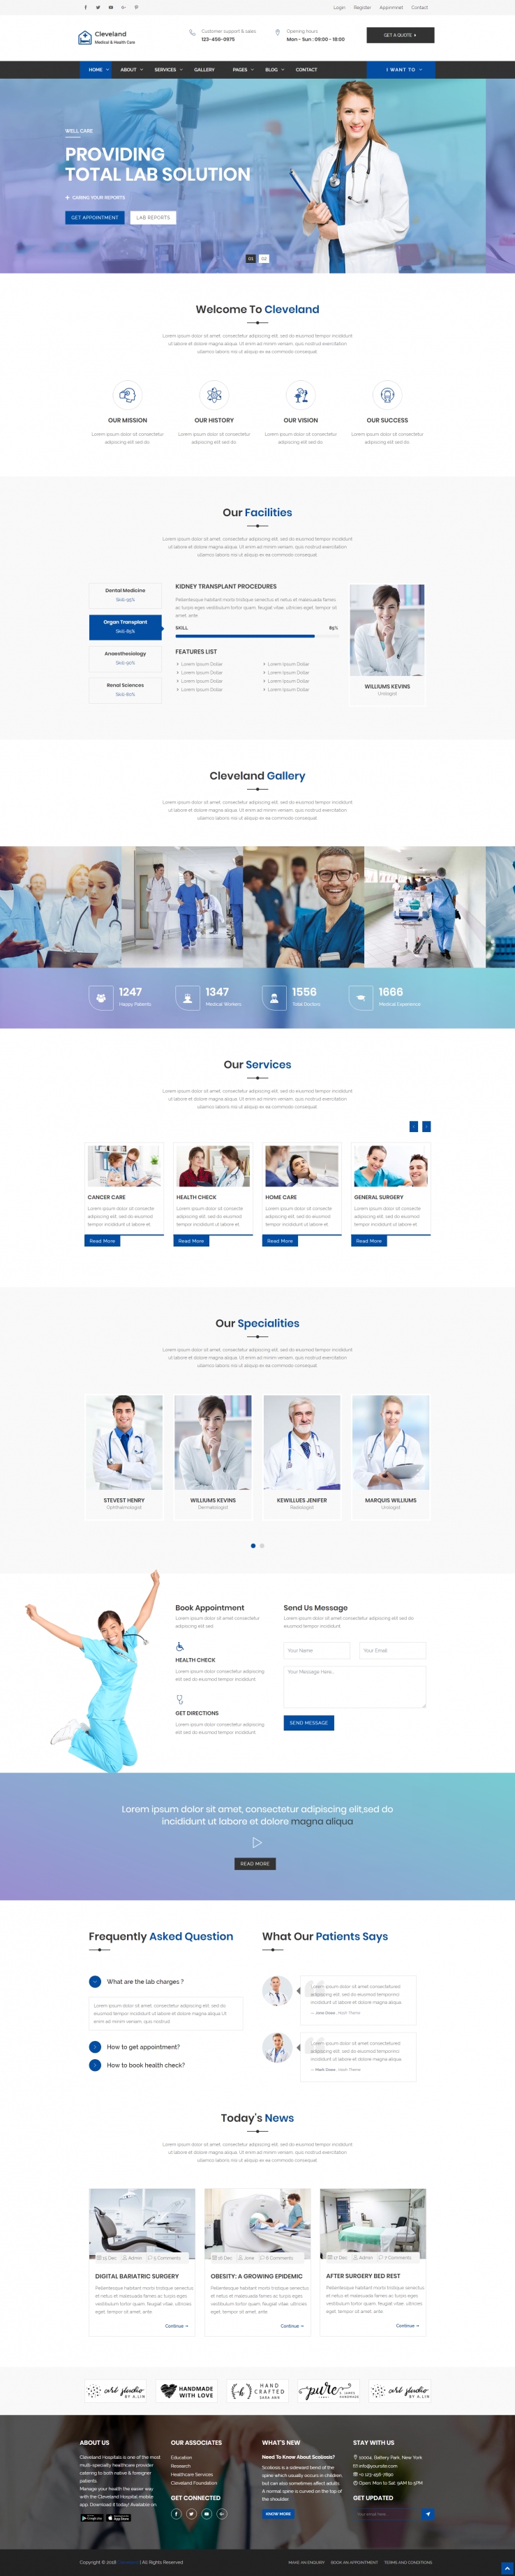 蓝色简洁风格的医疗健康体检企业网站源码下载